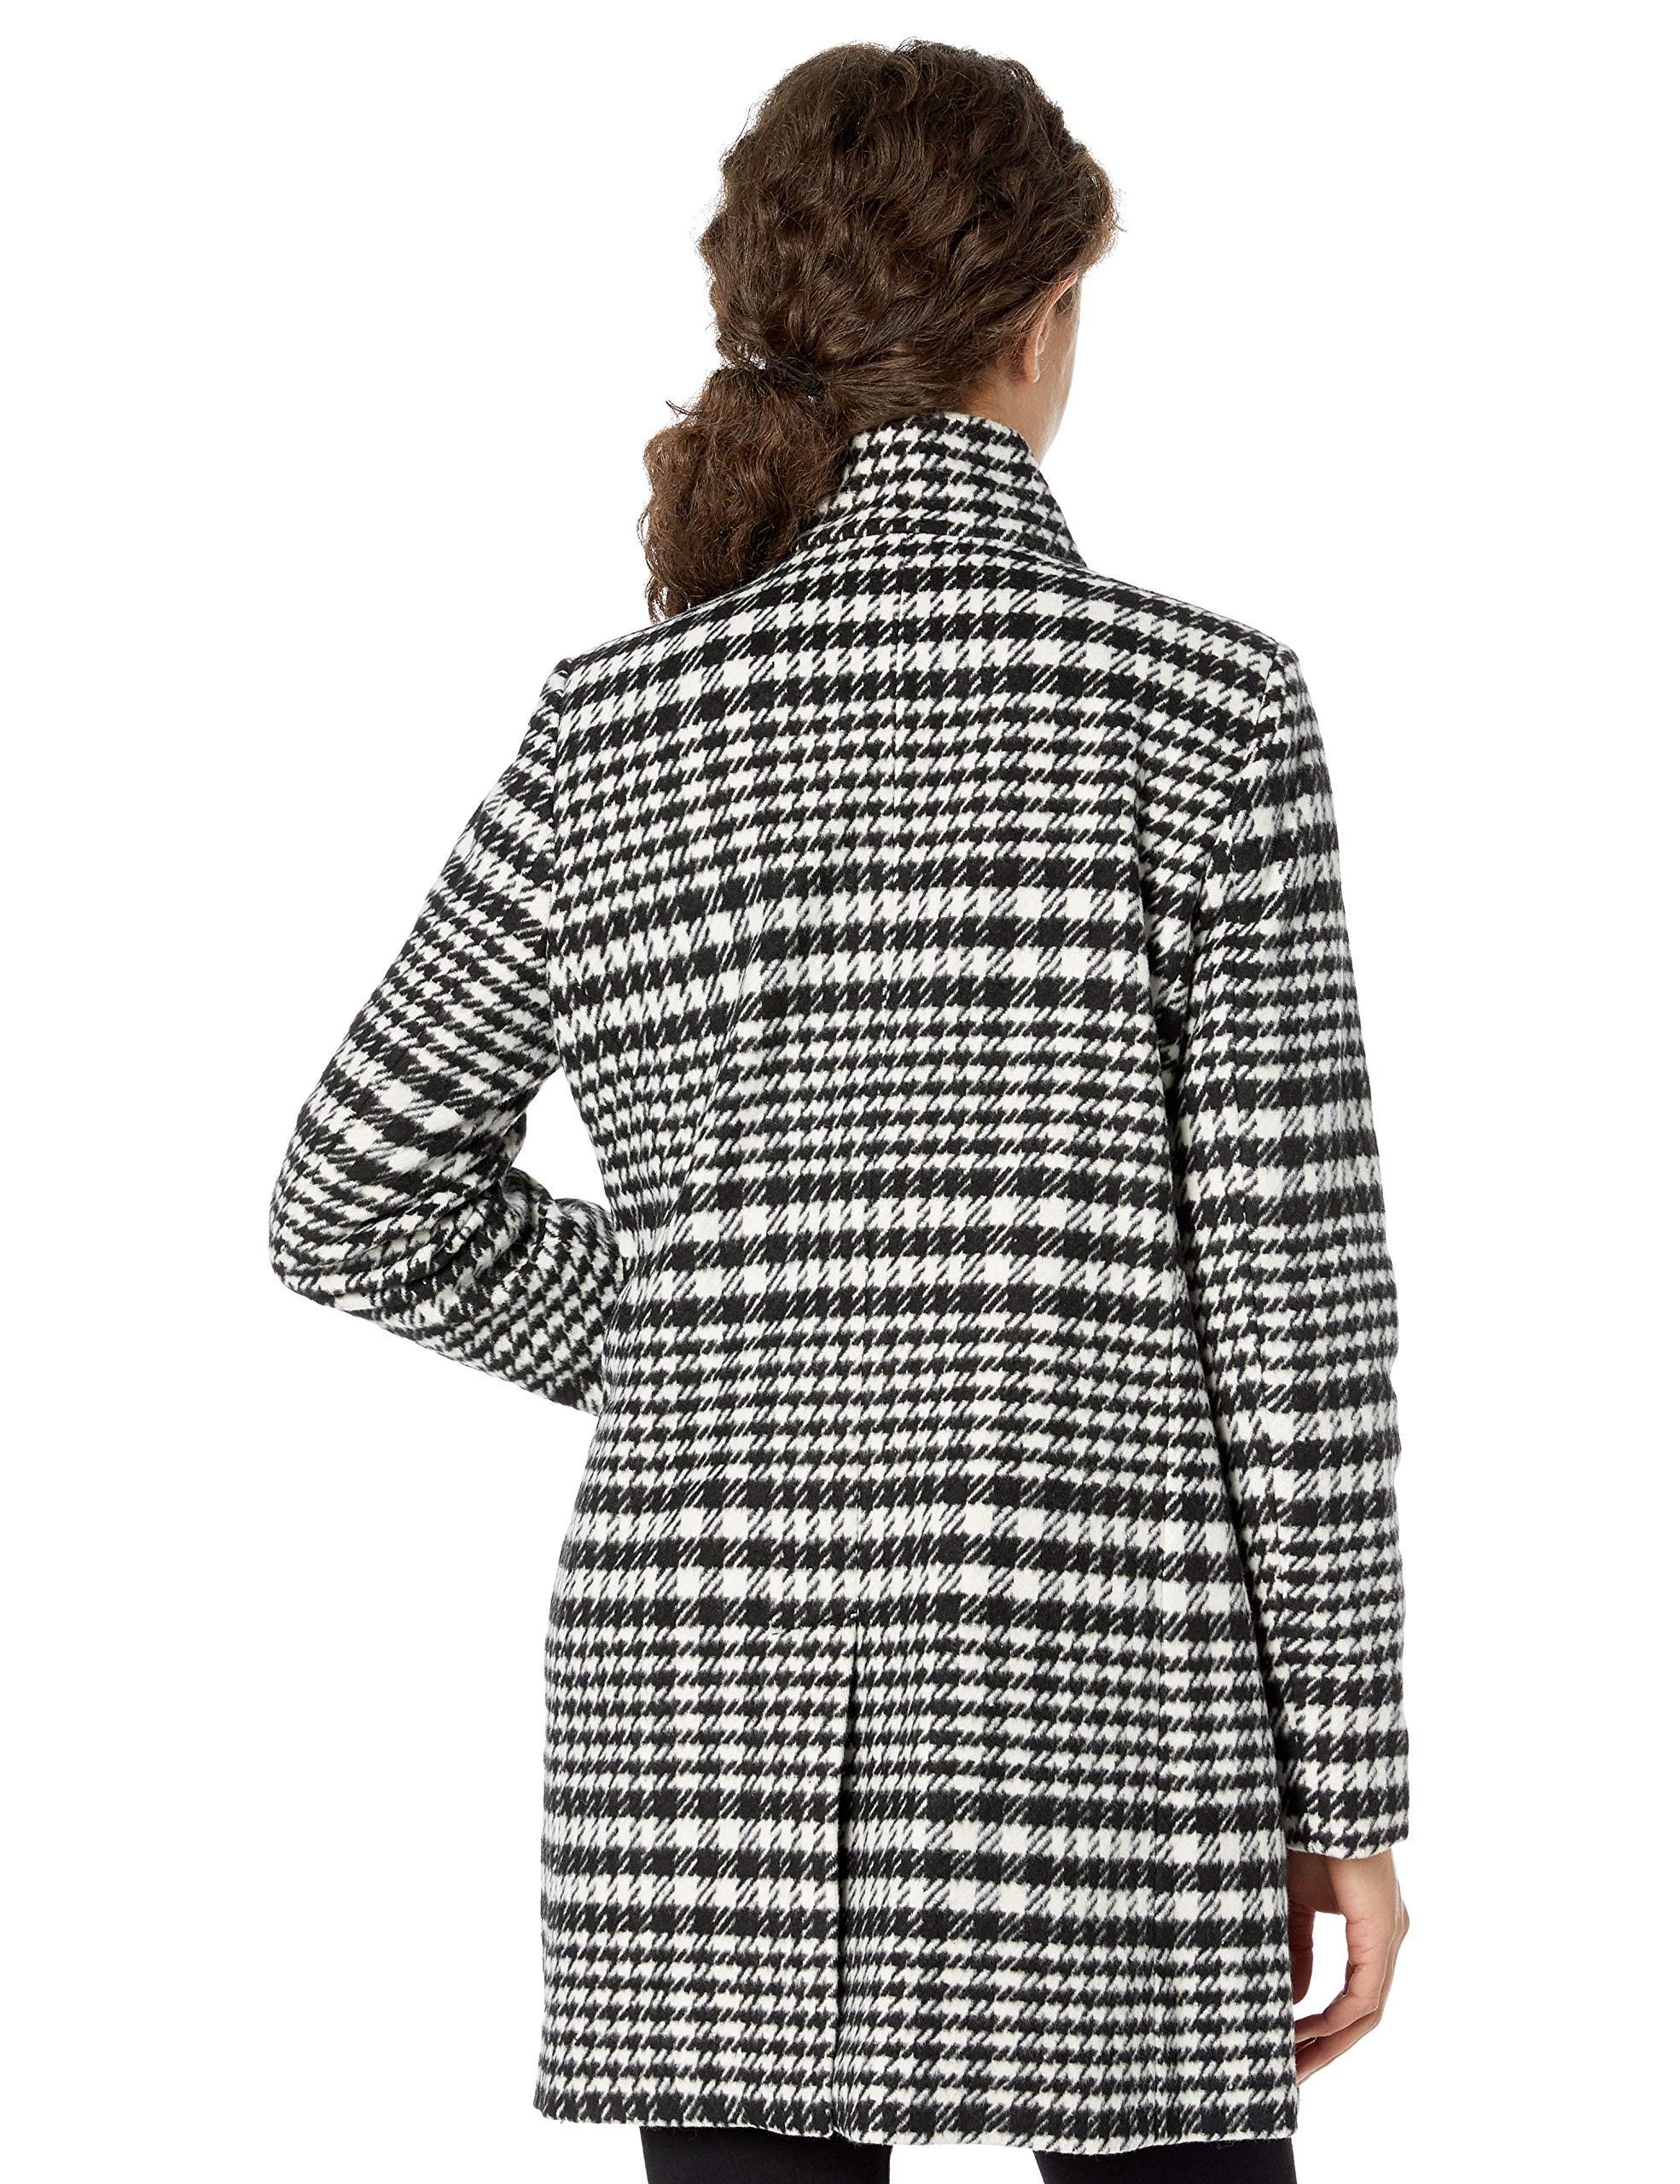 Kensie Casual Wool Coat in Black/White (Black) - Lyst